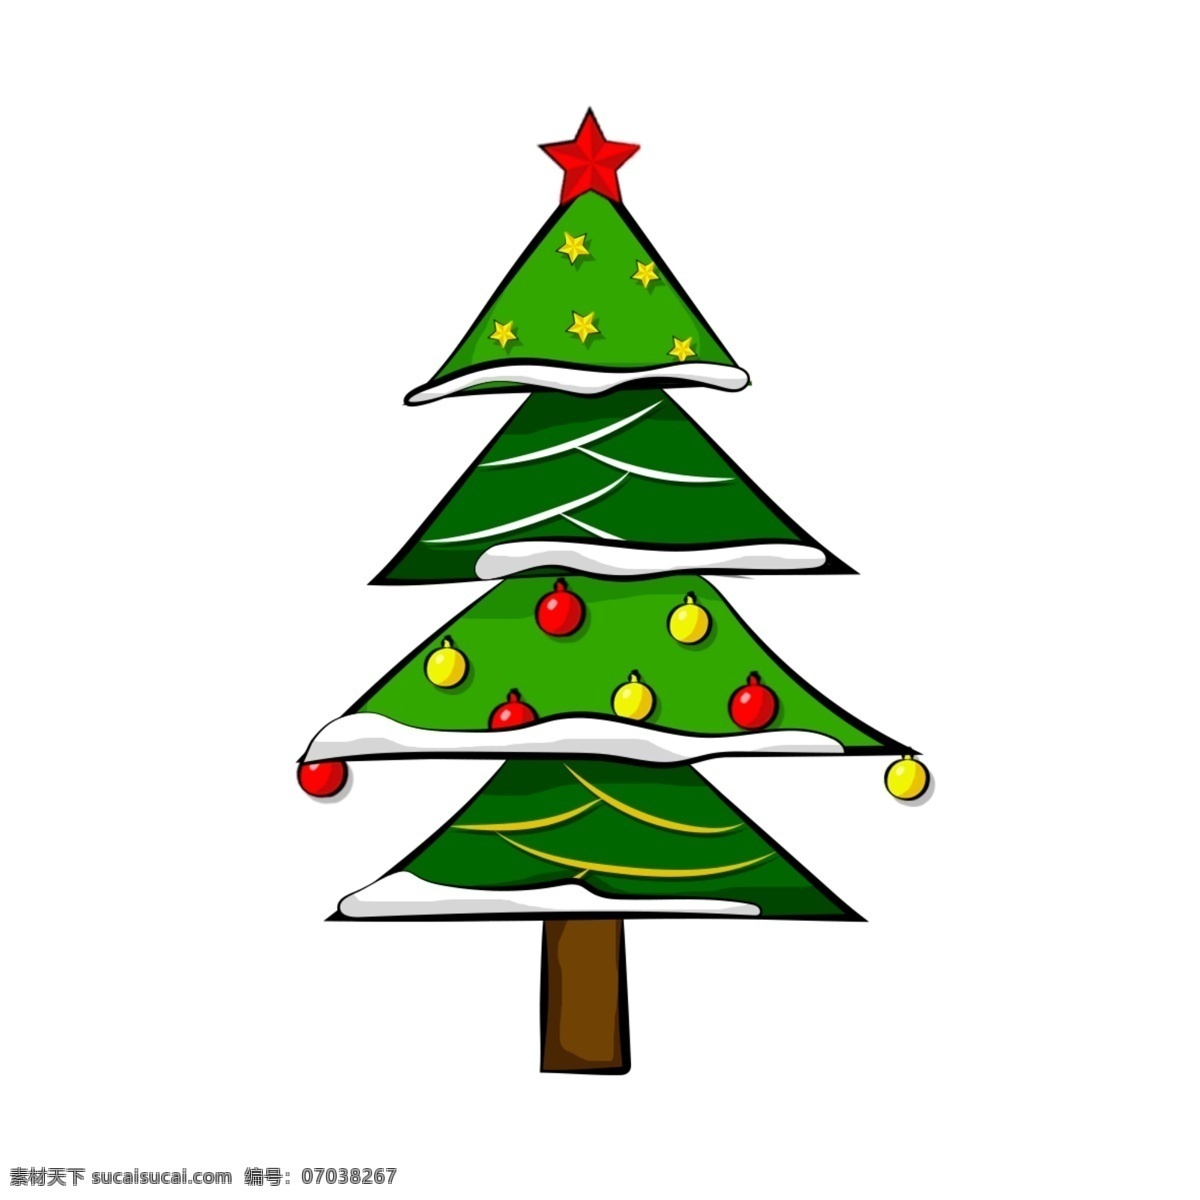 圣诞 矢量 圣诞树 装饰 元素 矢量元素 圣诞元素 节日 星星 装饰物 树